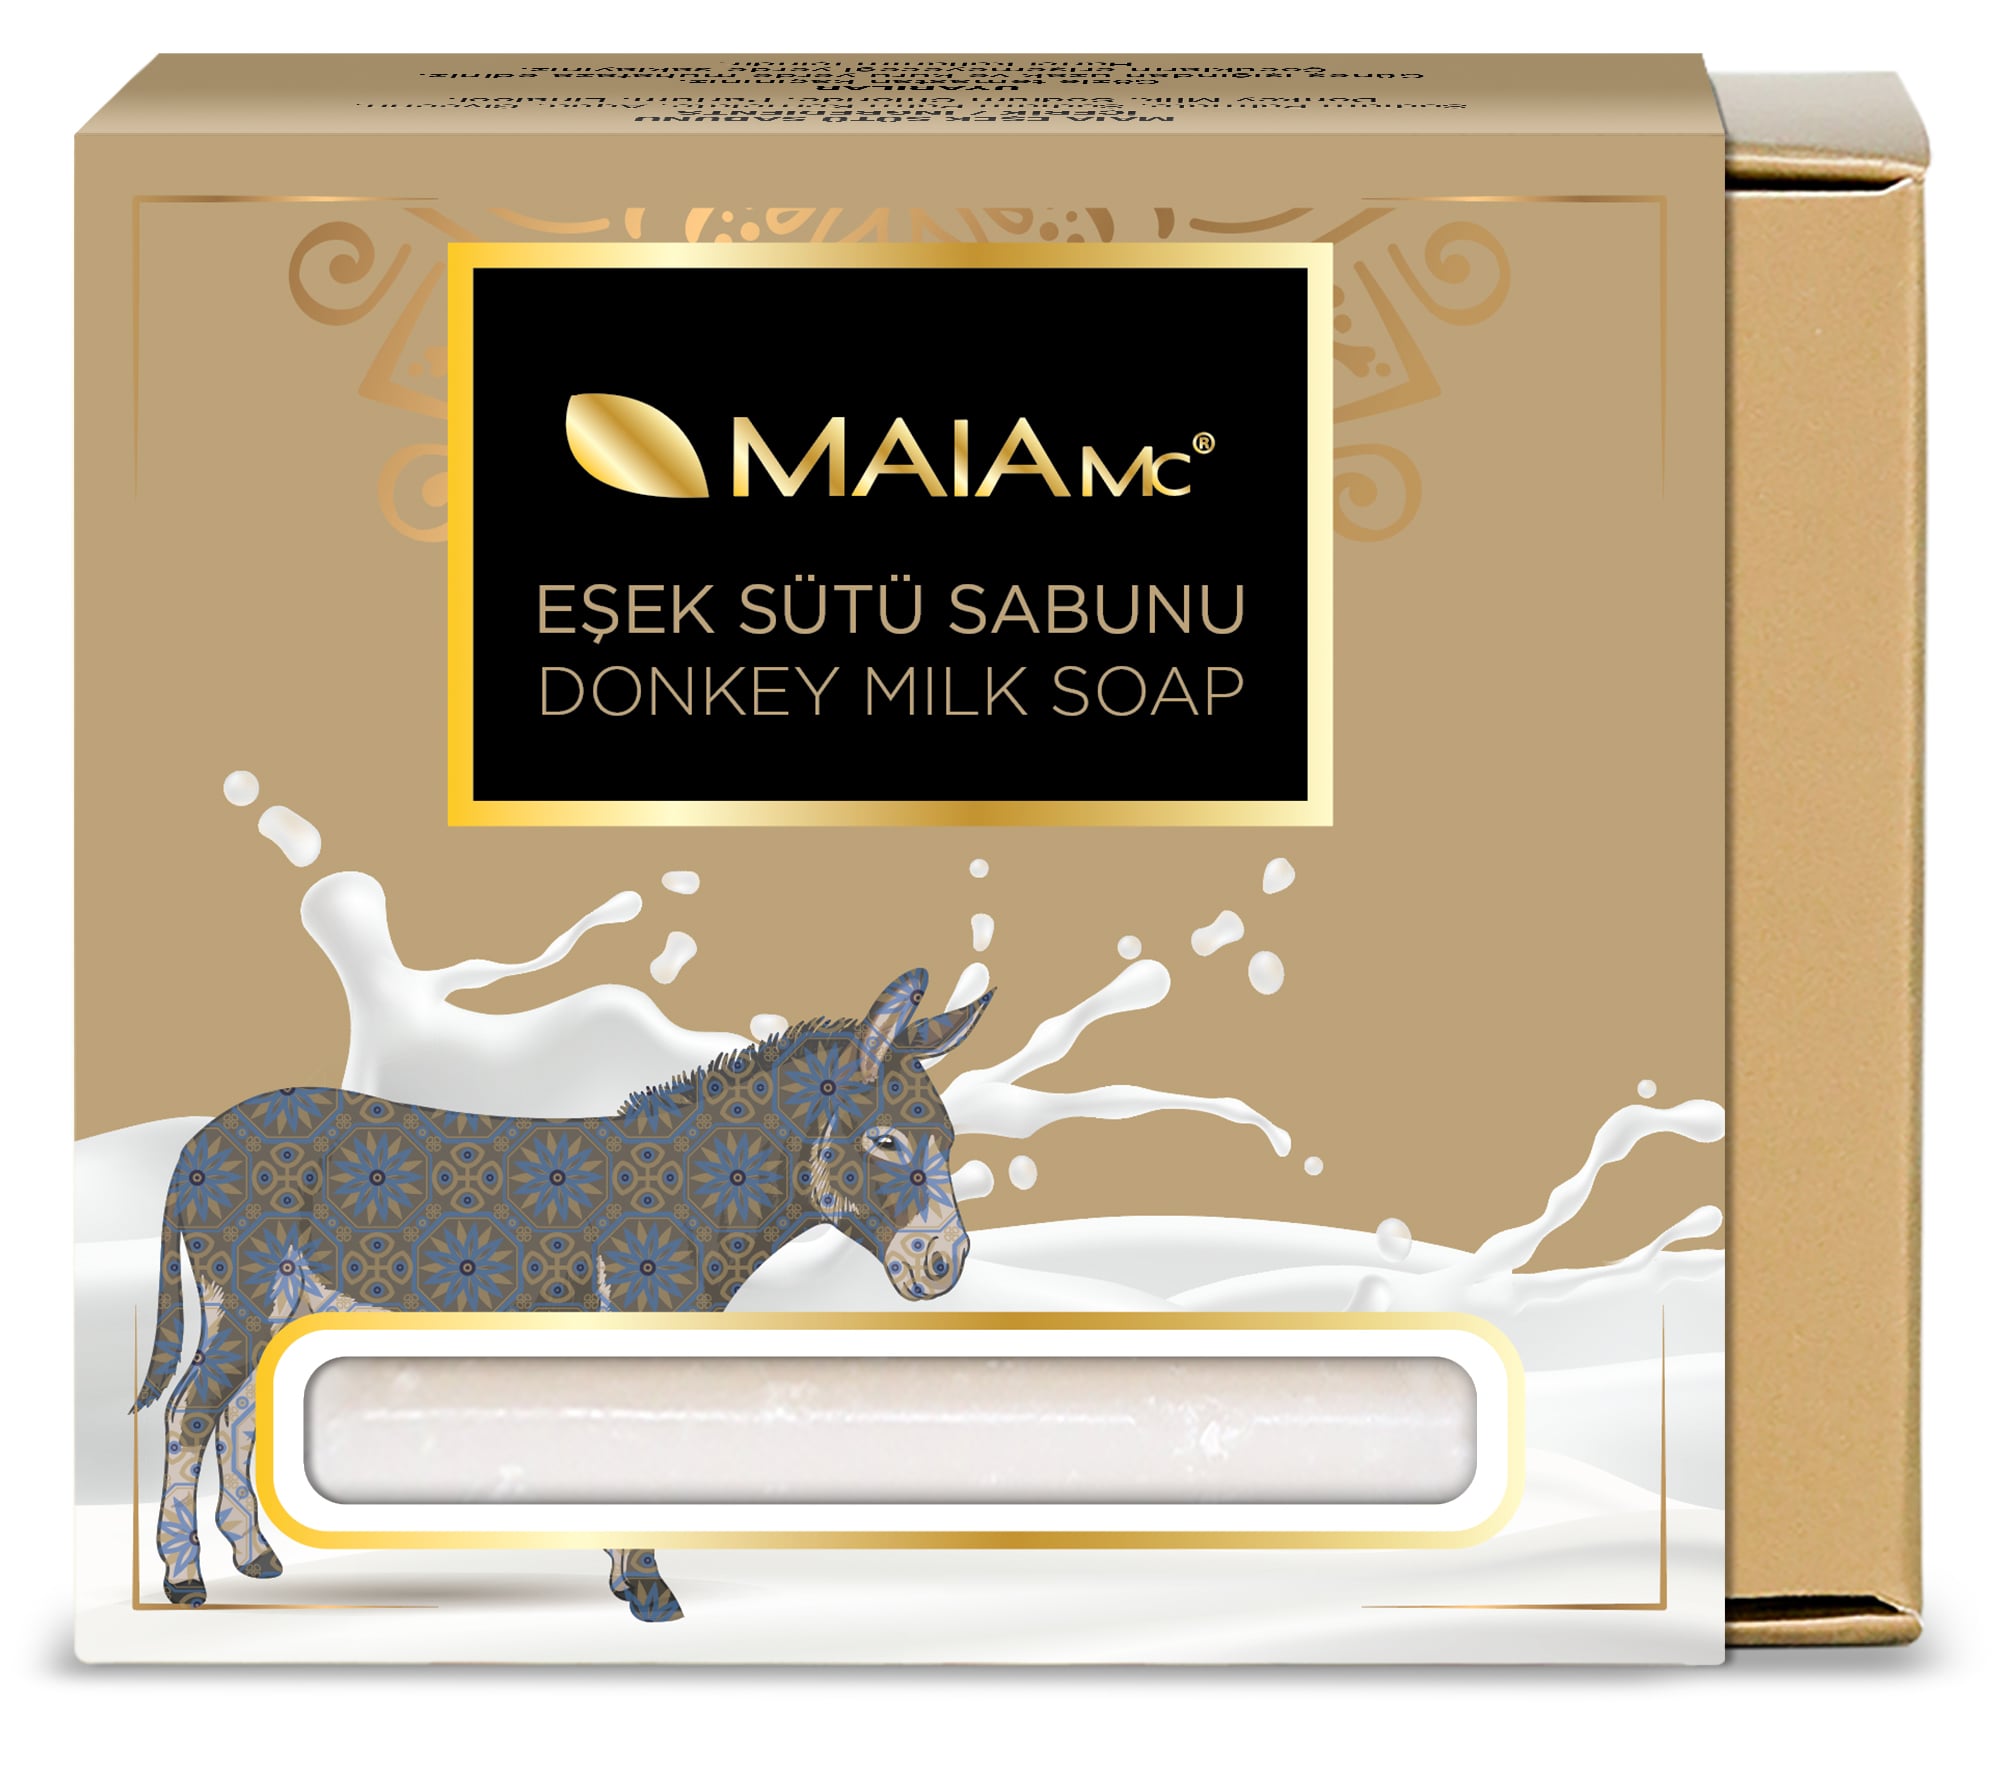 Турецкое натуральное мыло Maia Mc из ослиного молока бизорюк натуральное мыло для малышей детское с молоком 2